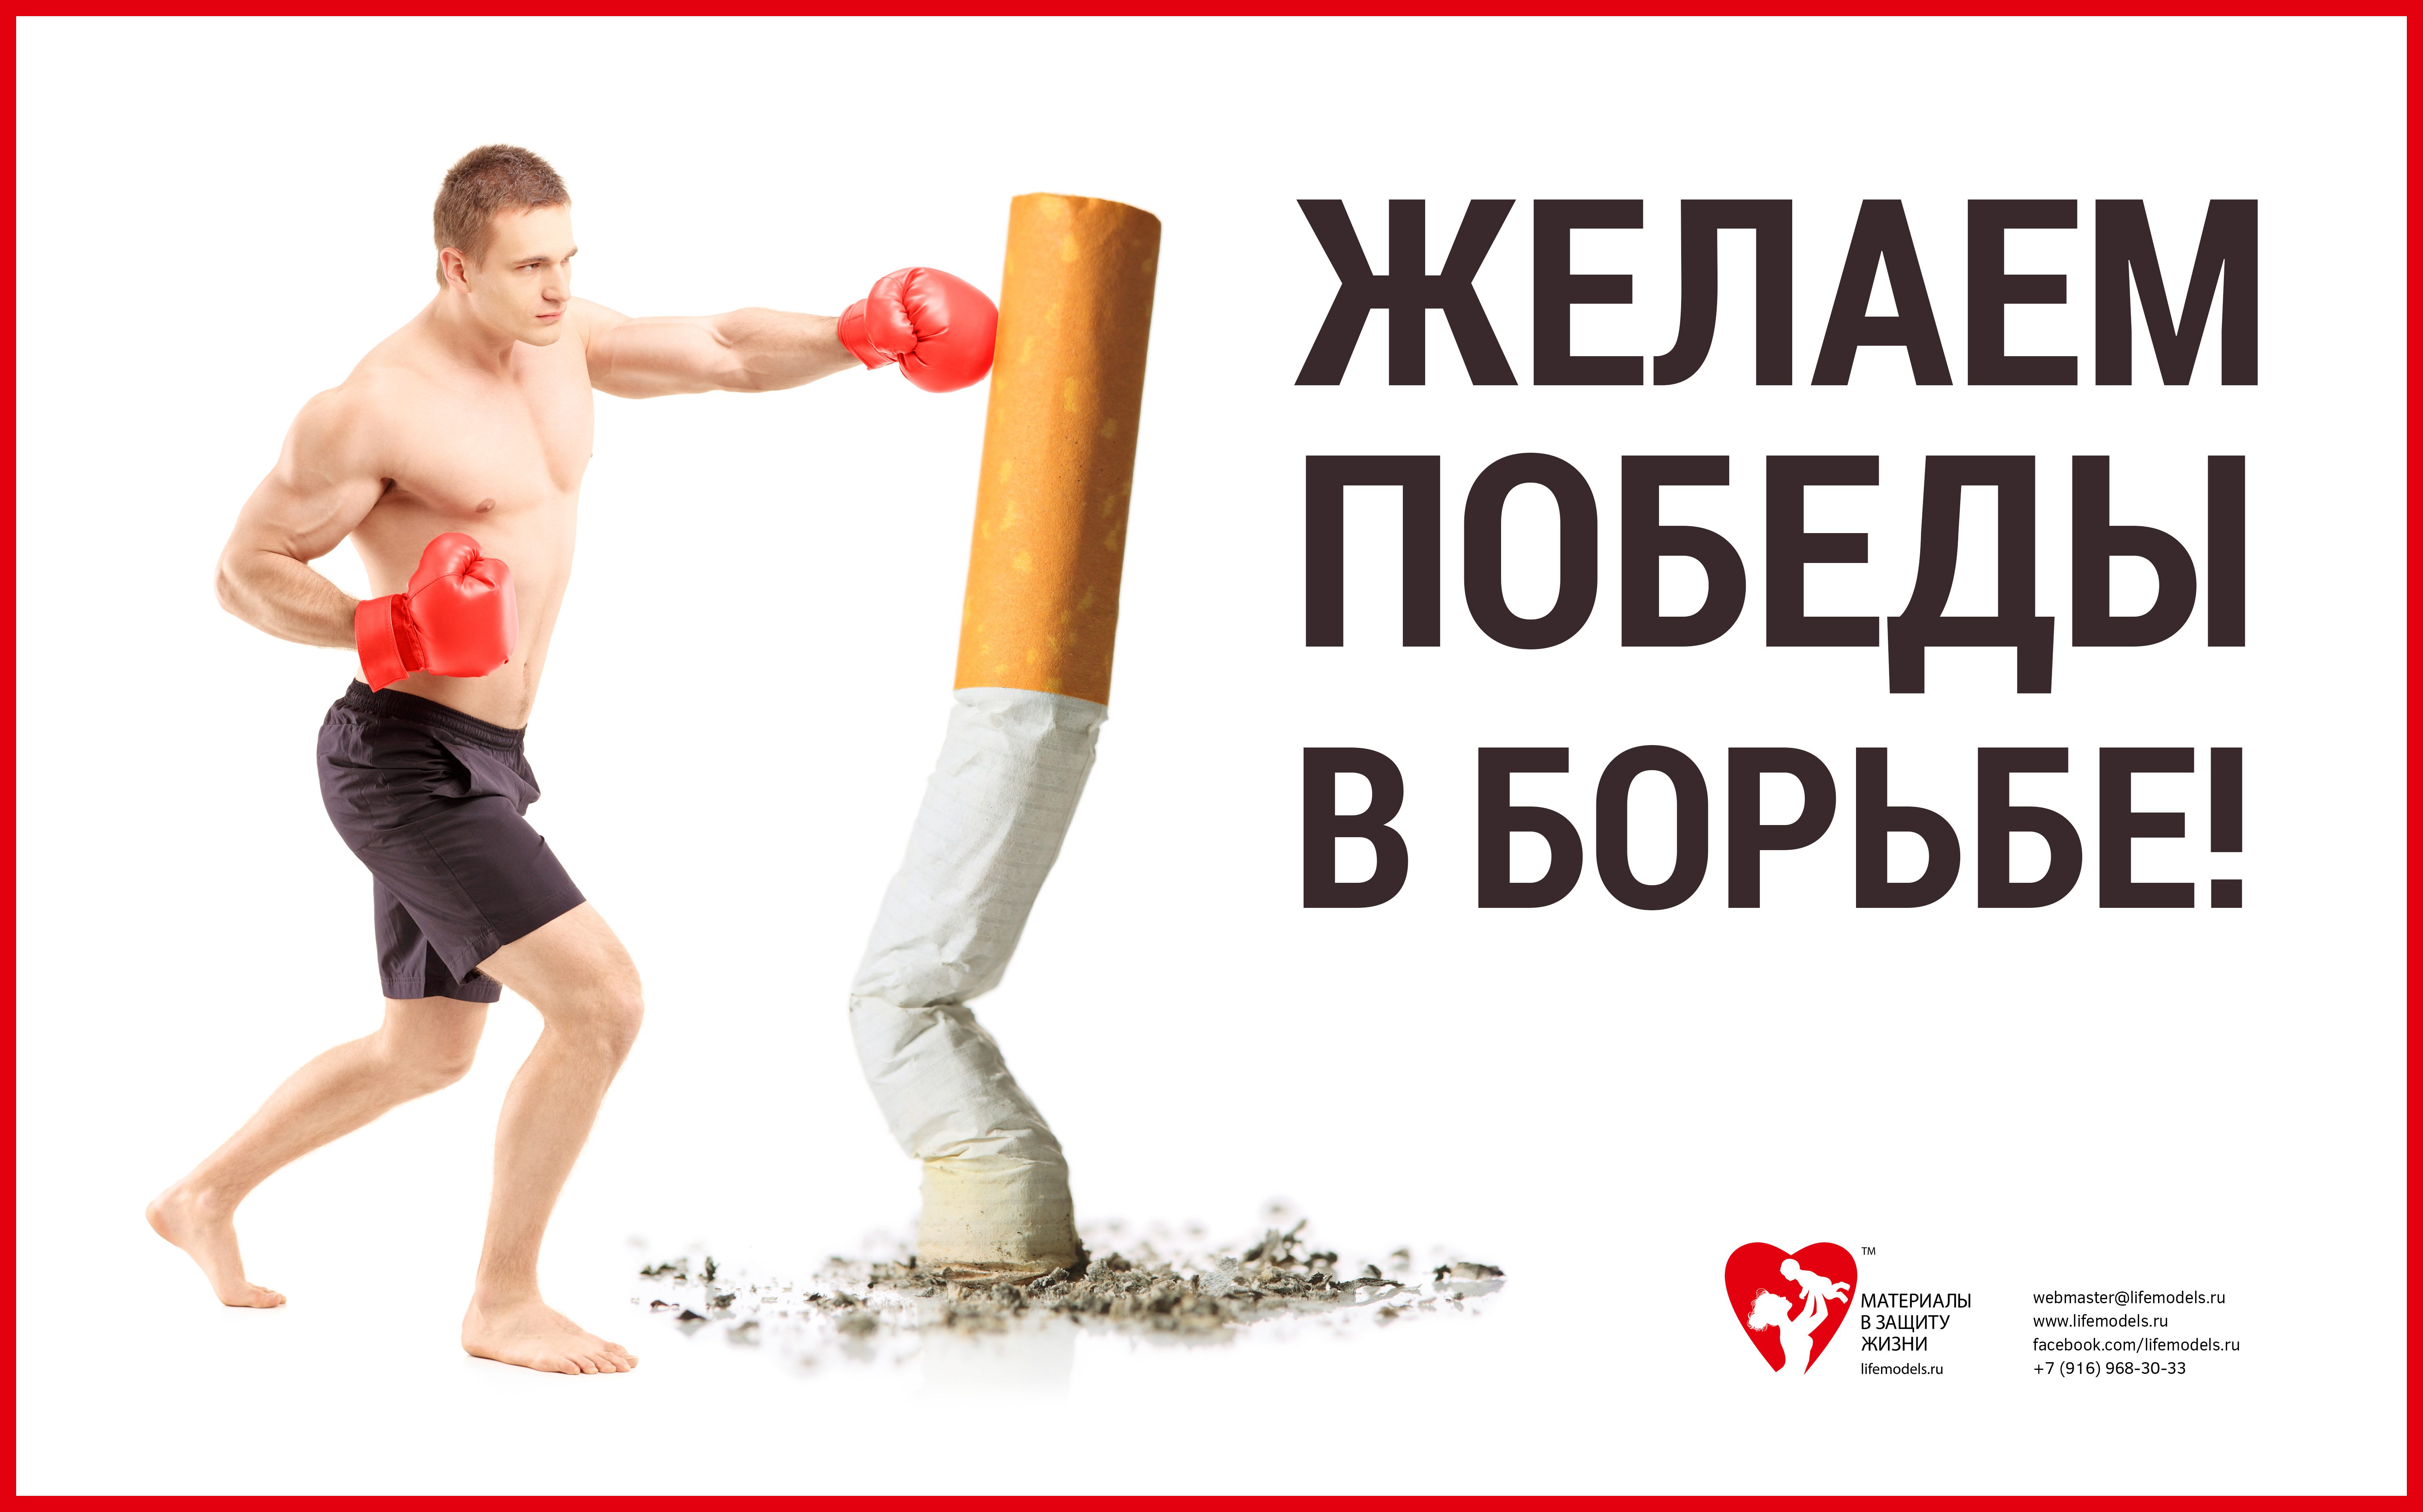 Бросить курить спорт. Баннер против курения. Спорт против курения. Борьба против курения. Реклама борьба с курением.